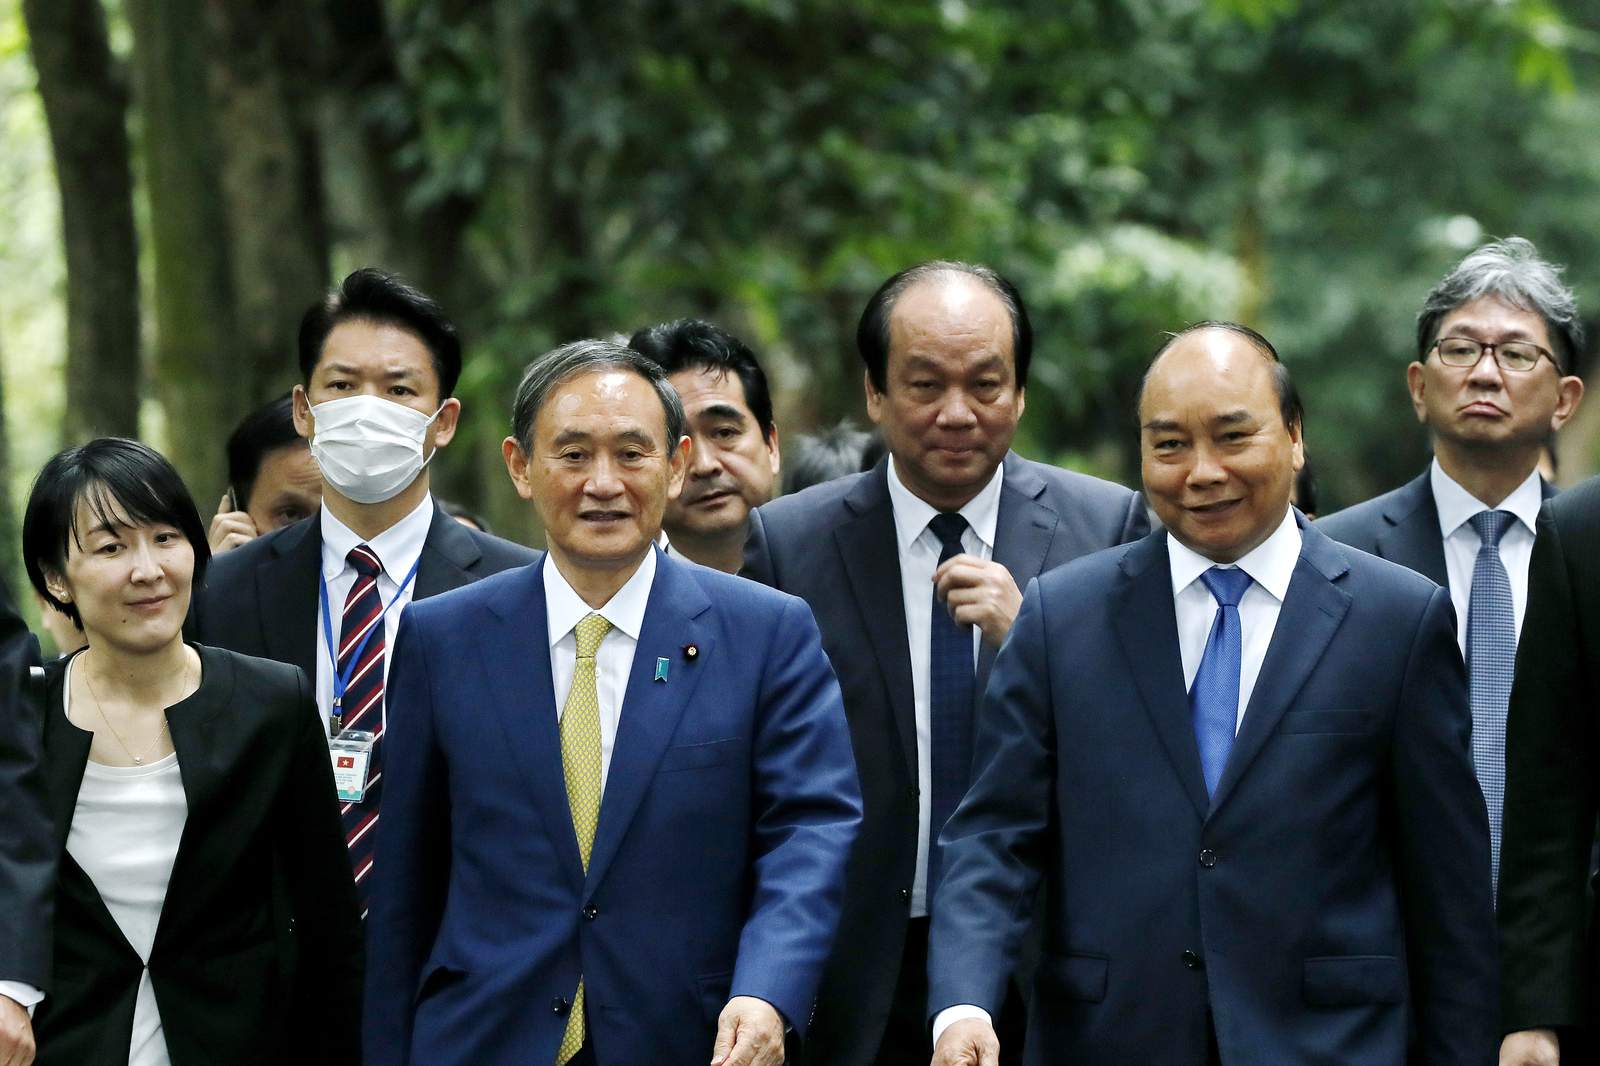 Japan, Vietnam agree to boost defense ties, resume flights